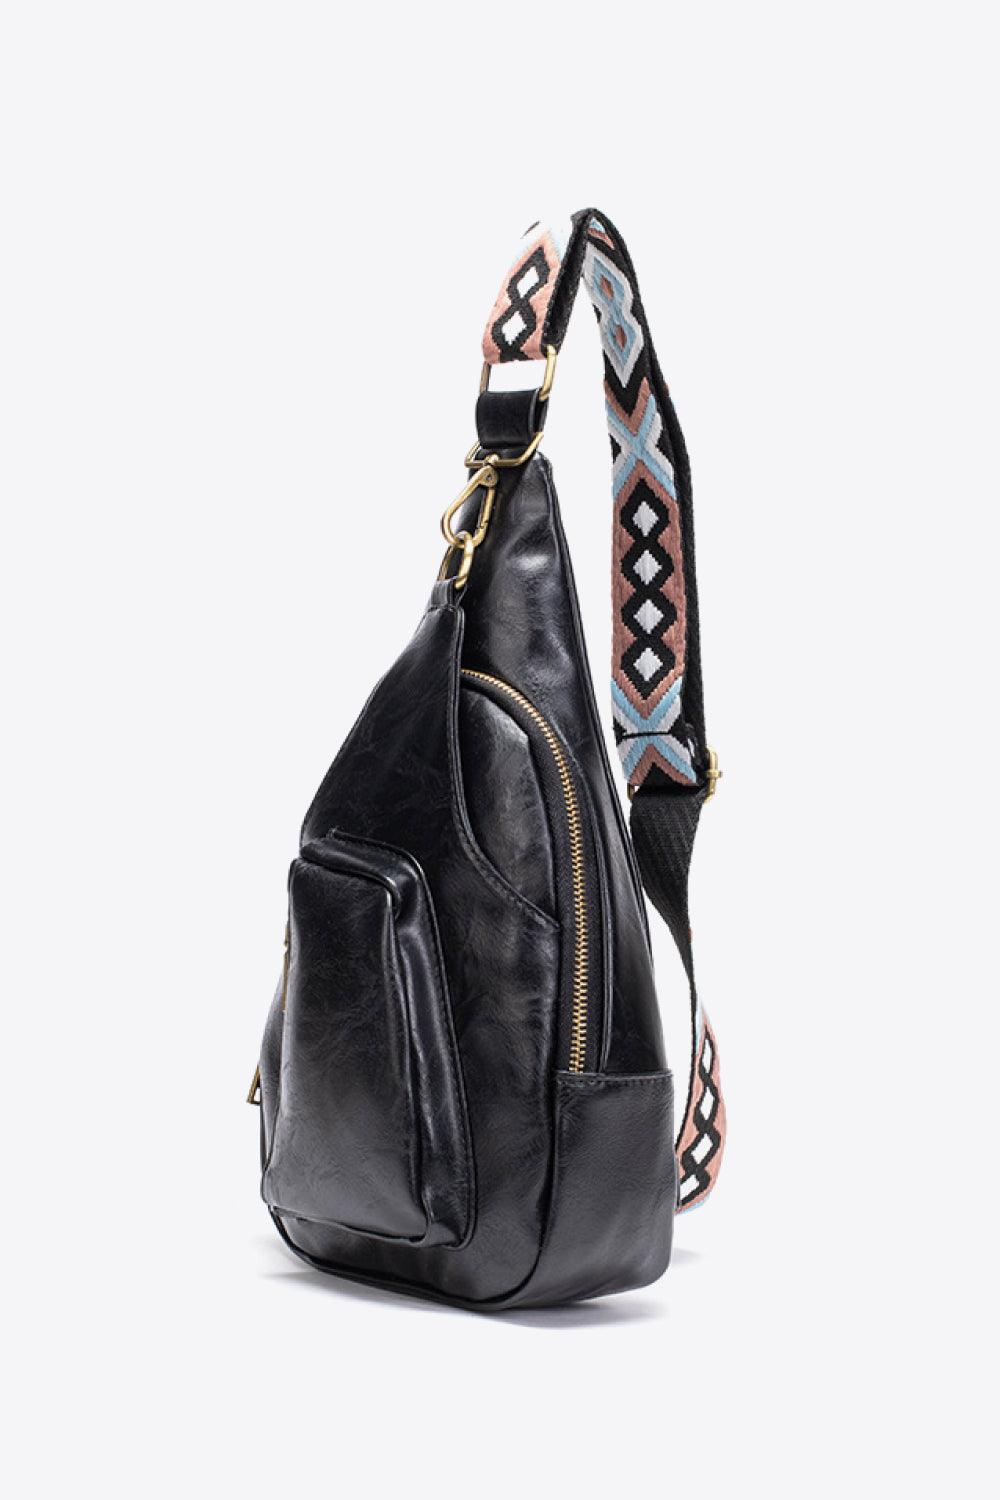 PU Leather Stylish Sling Bag with handle and adjustable shoulder strap for  Women/Trendy Branded Sling Bag for Girls Latest(HNDL SLNG)